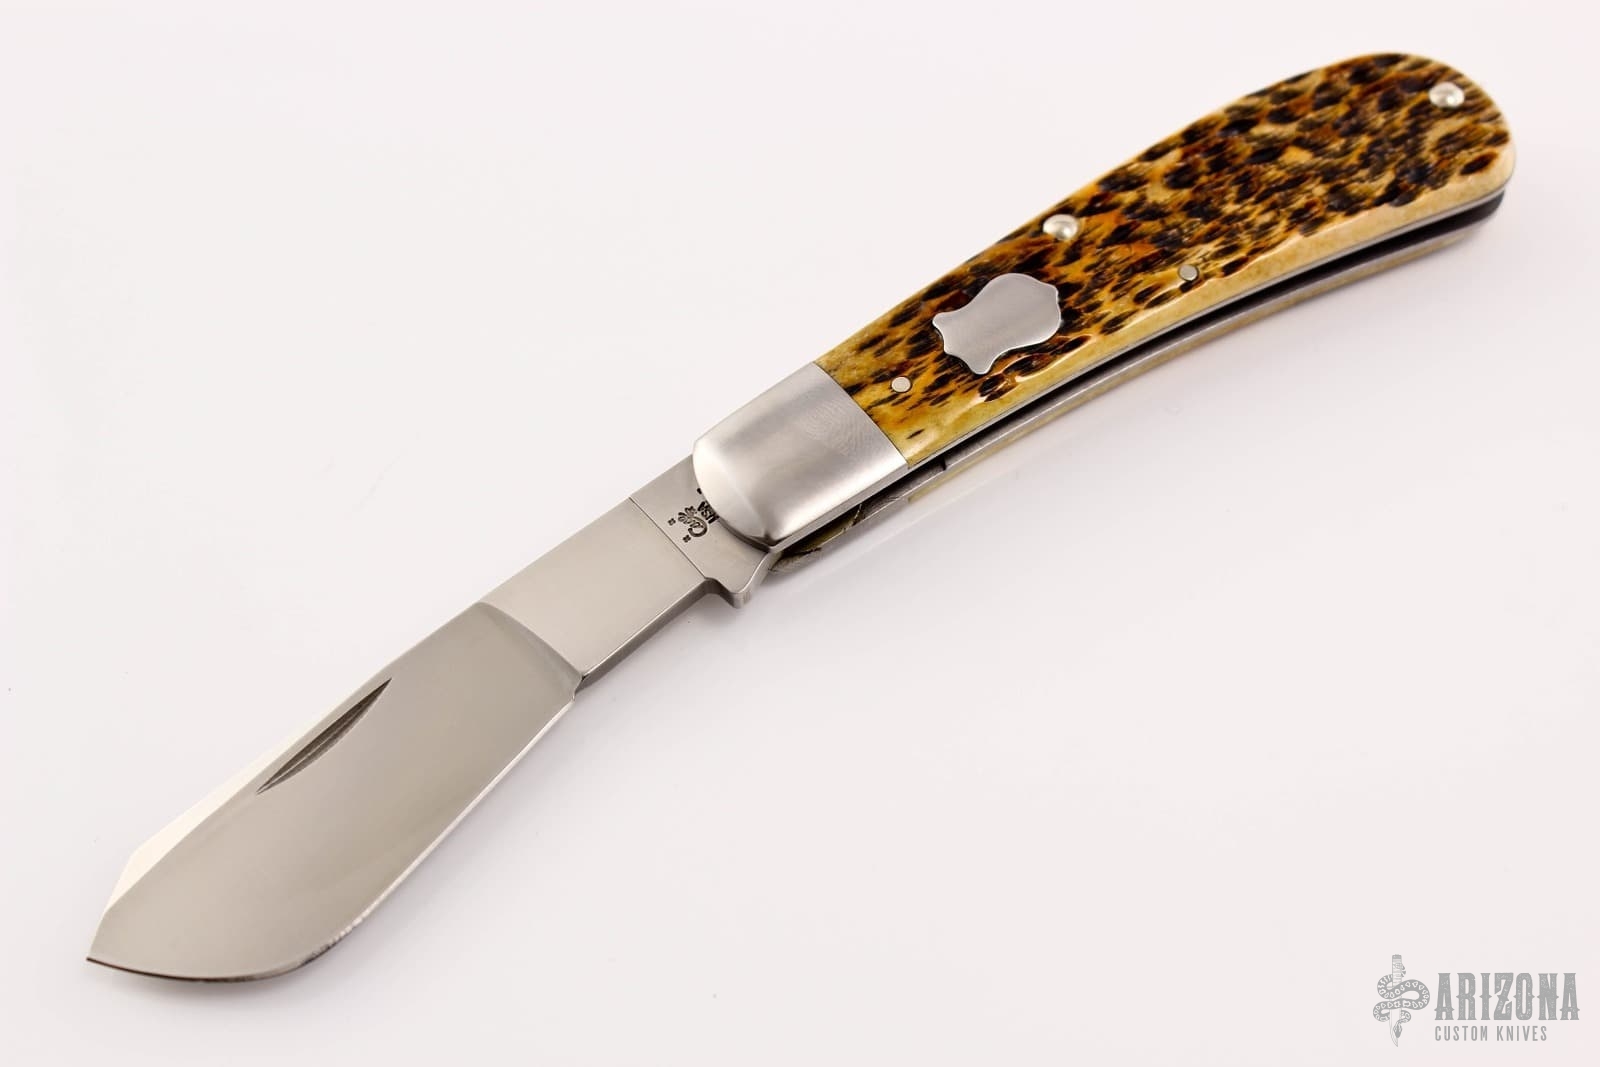 612006 Sampler Arizona Custom Knives